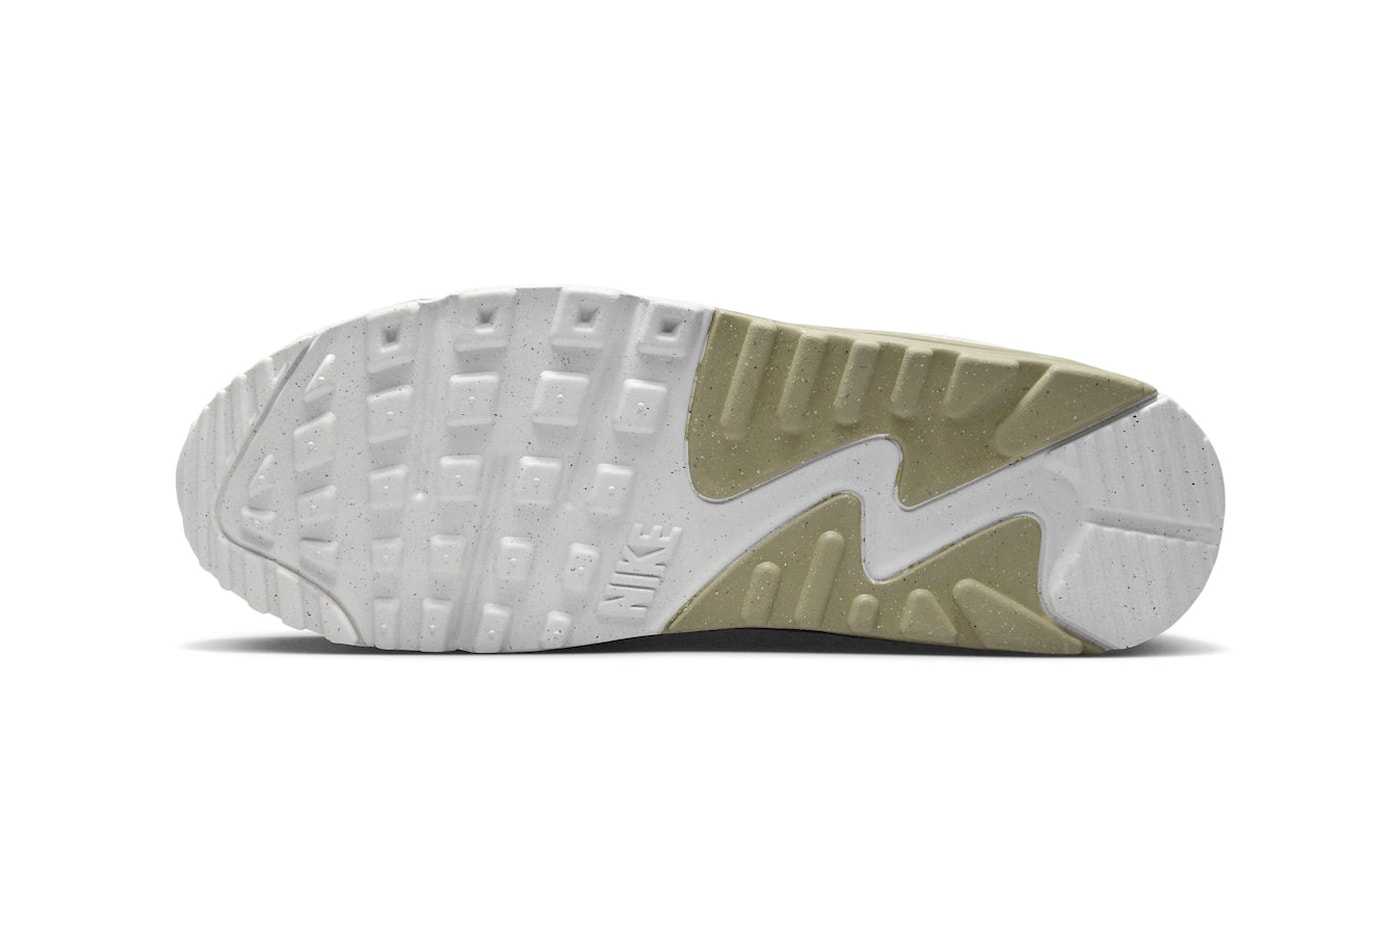 ナイキからミリタリー服にも合わせやすそうなエアマックス90が登場 Nike Air Max 90 Arrives in "Phantom/Neutral Olive" FB9657-002 Phantom/Neutral Olive-Light Bone running shoes sneakers swoosh